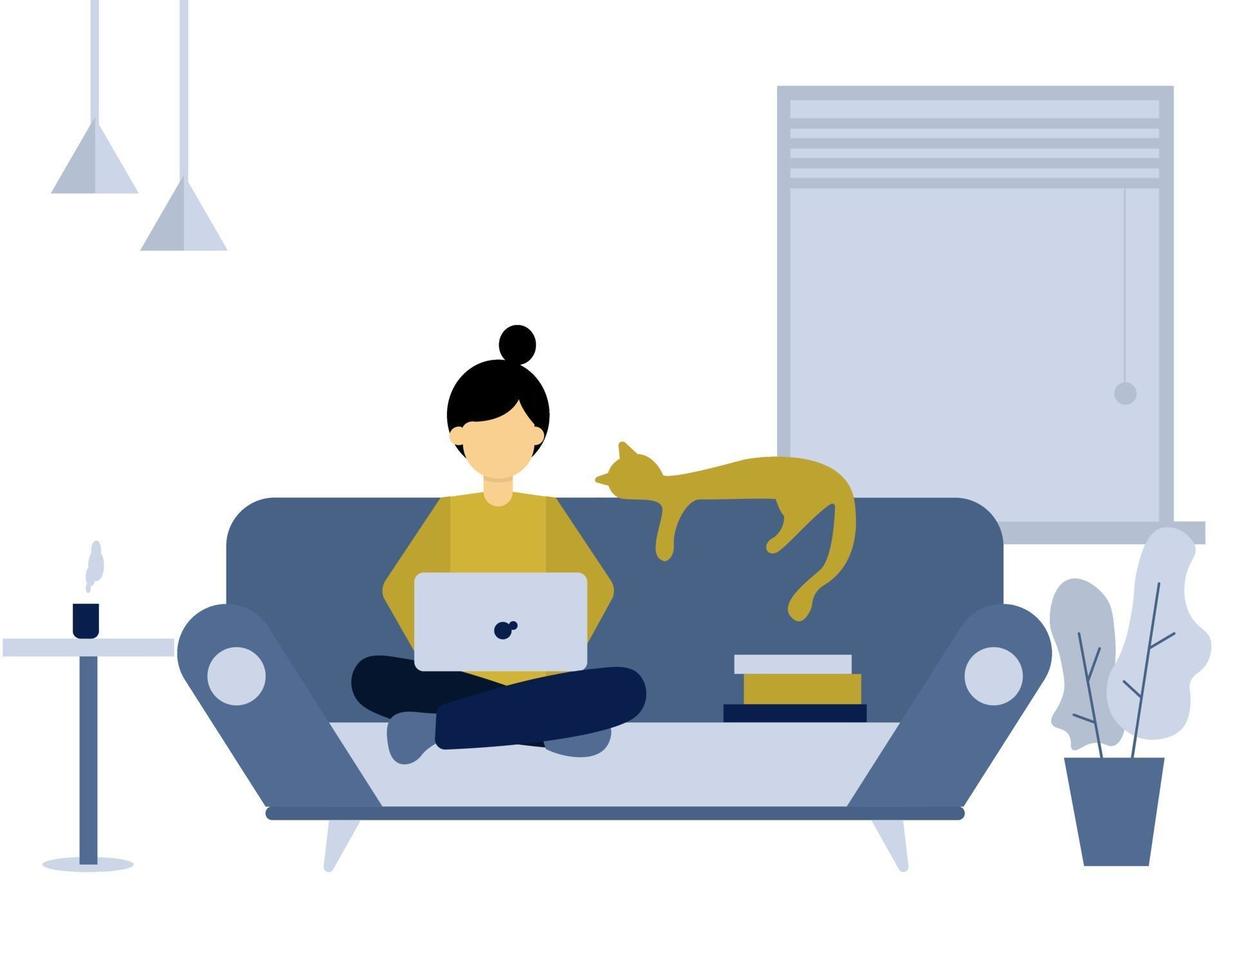 projeto de ilustração plana de uma mulher que trabalha em casa, sentada em um sofá e fazendo trabalho remoto com seu laptop. freelance, trabalho de casa e ilustração do conceito de estudo online. vetor